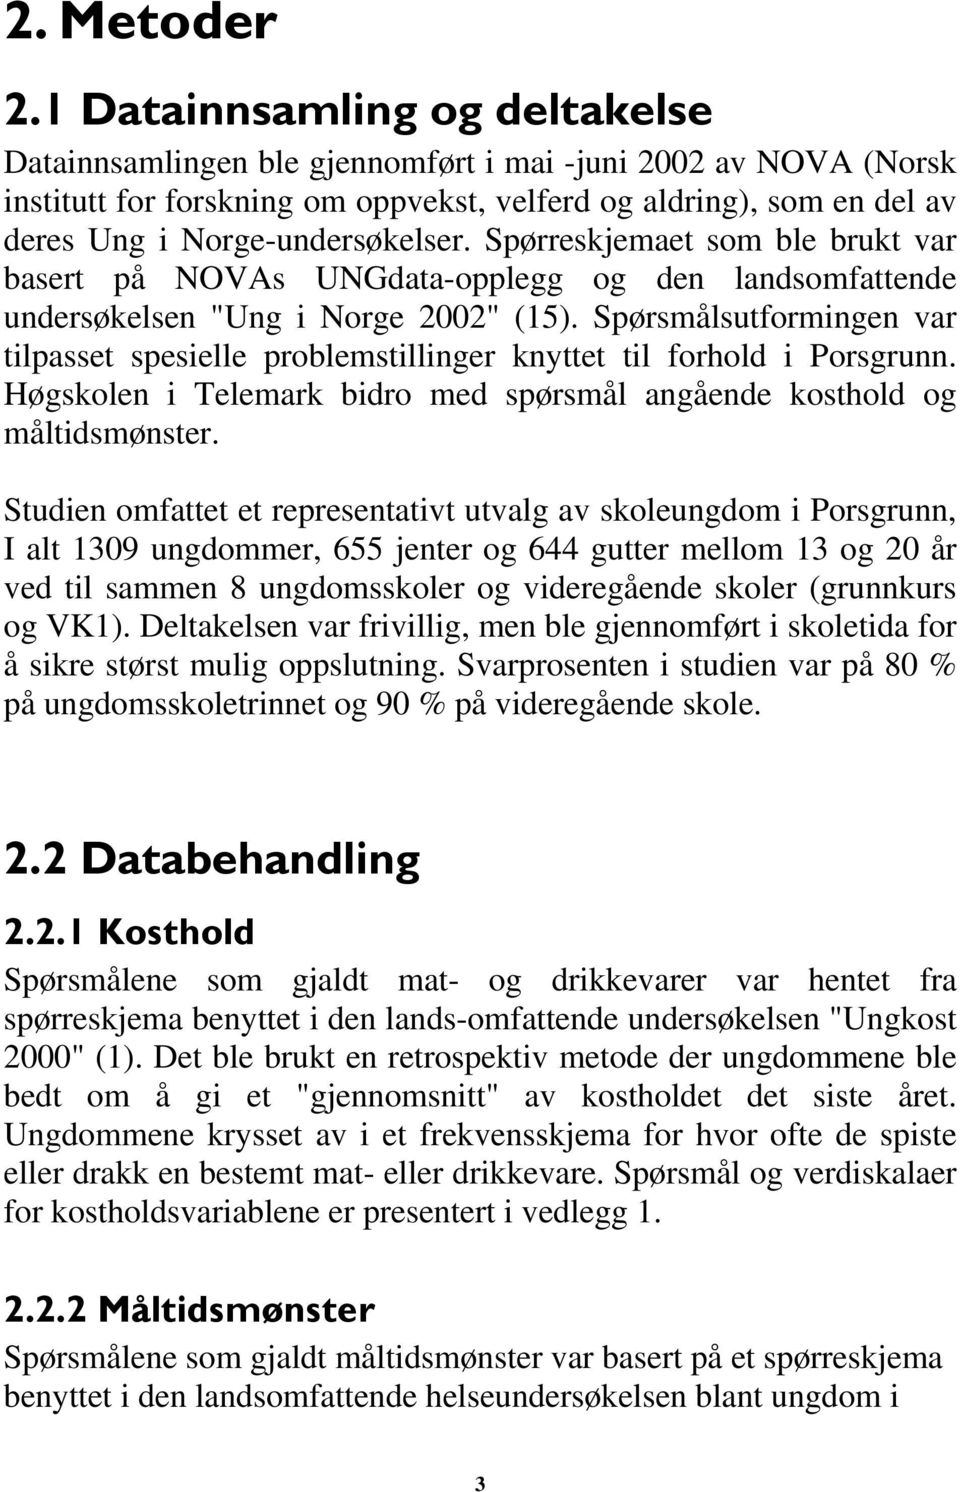 Spørreskjemaet som ble brukt var basert på NOVAs UNGdata-opplegg og den landsomfattende undersøkelsen "Ung i Norge 2002" (15).